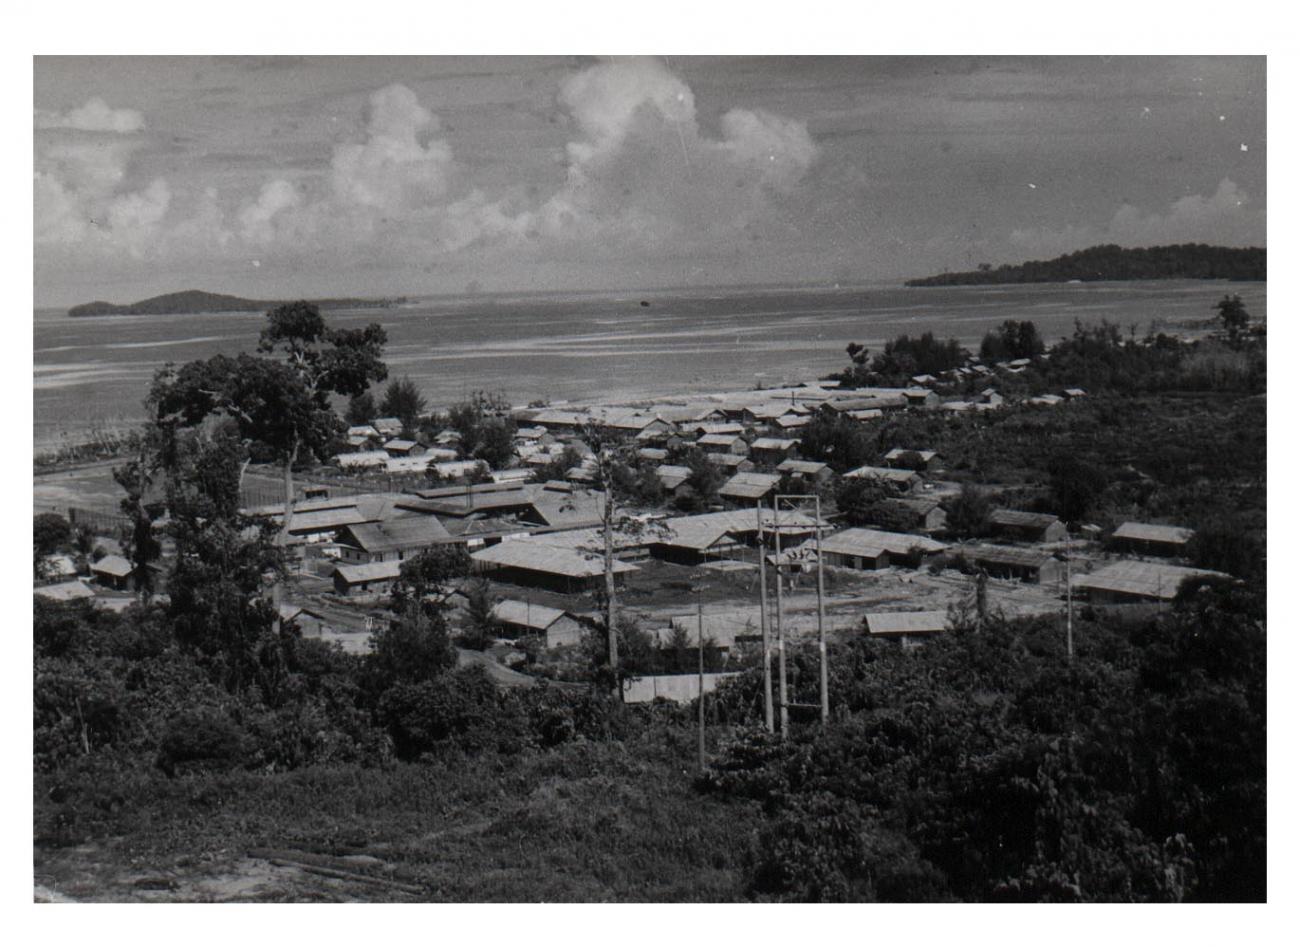 BD/54/13 - 
Panorama kampong Sorong
